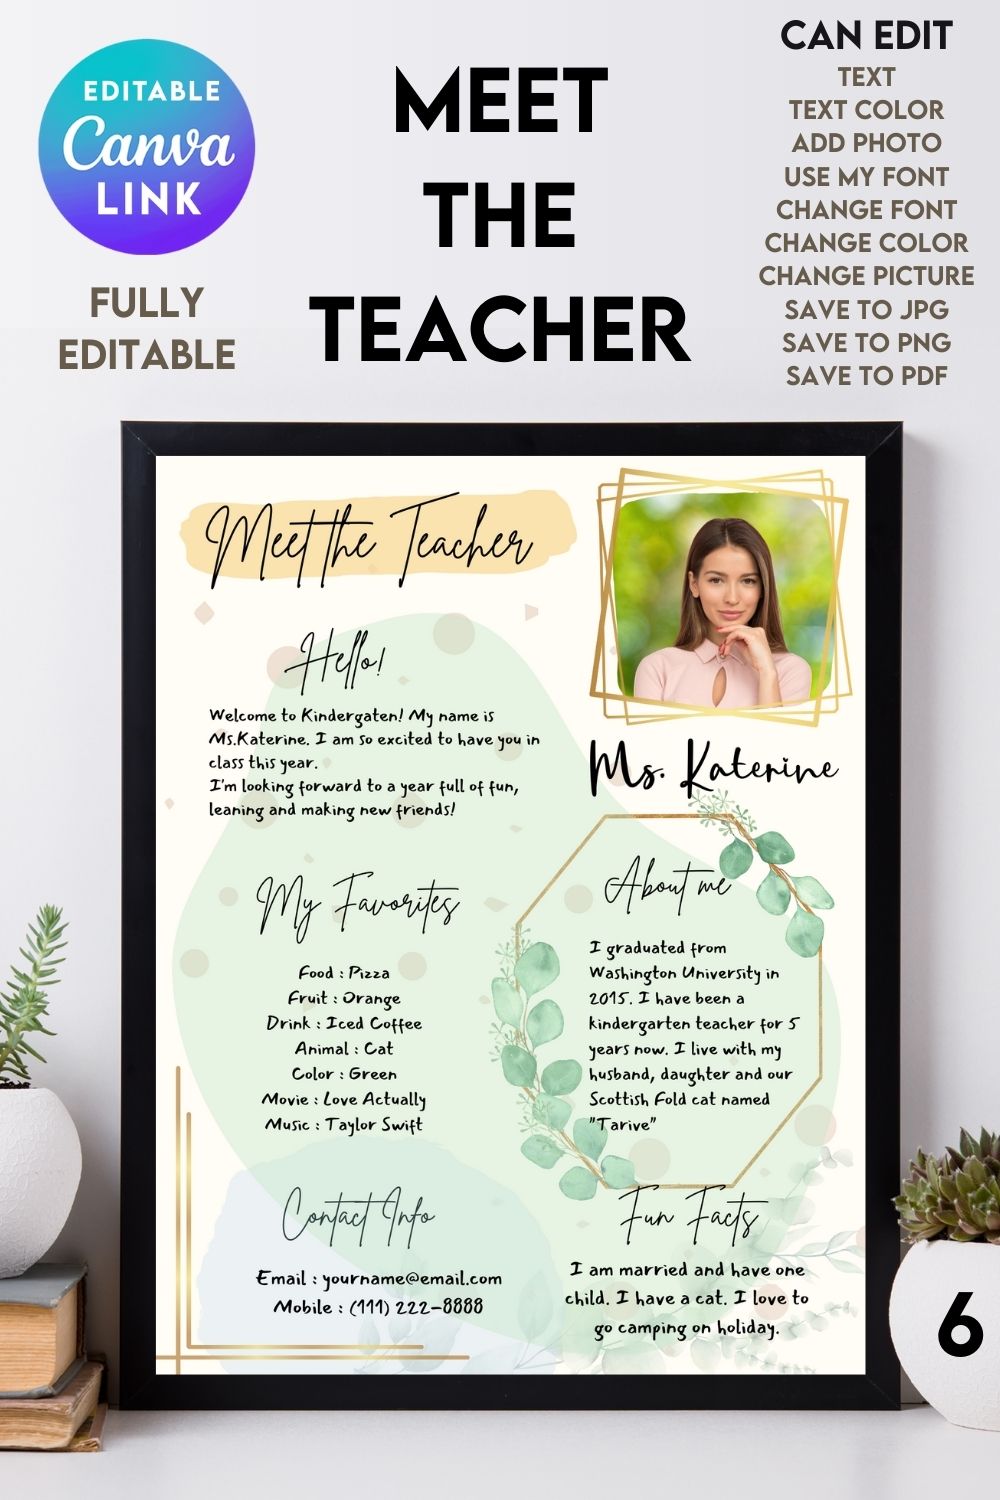 Meet The Teacher #6 – Canva Template pinterest preview image.